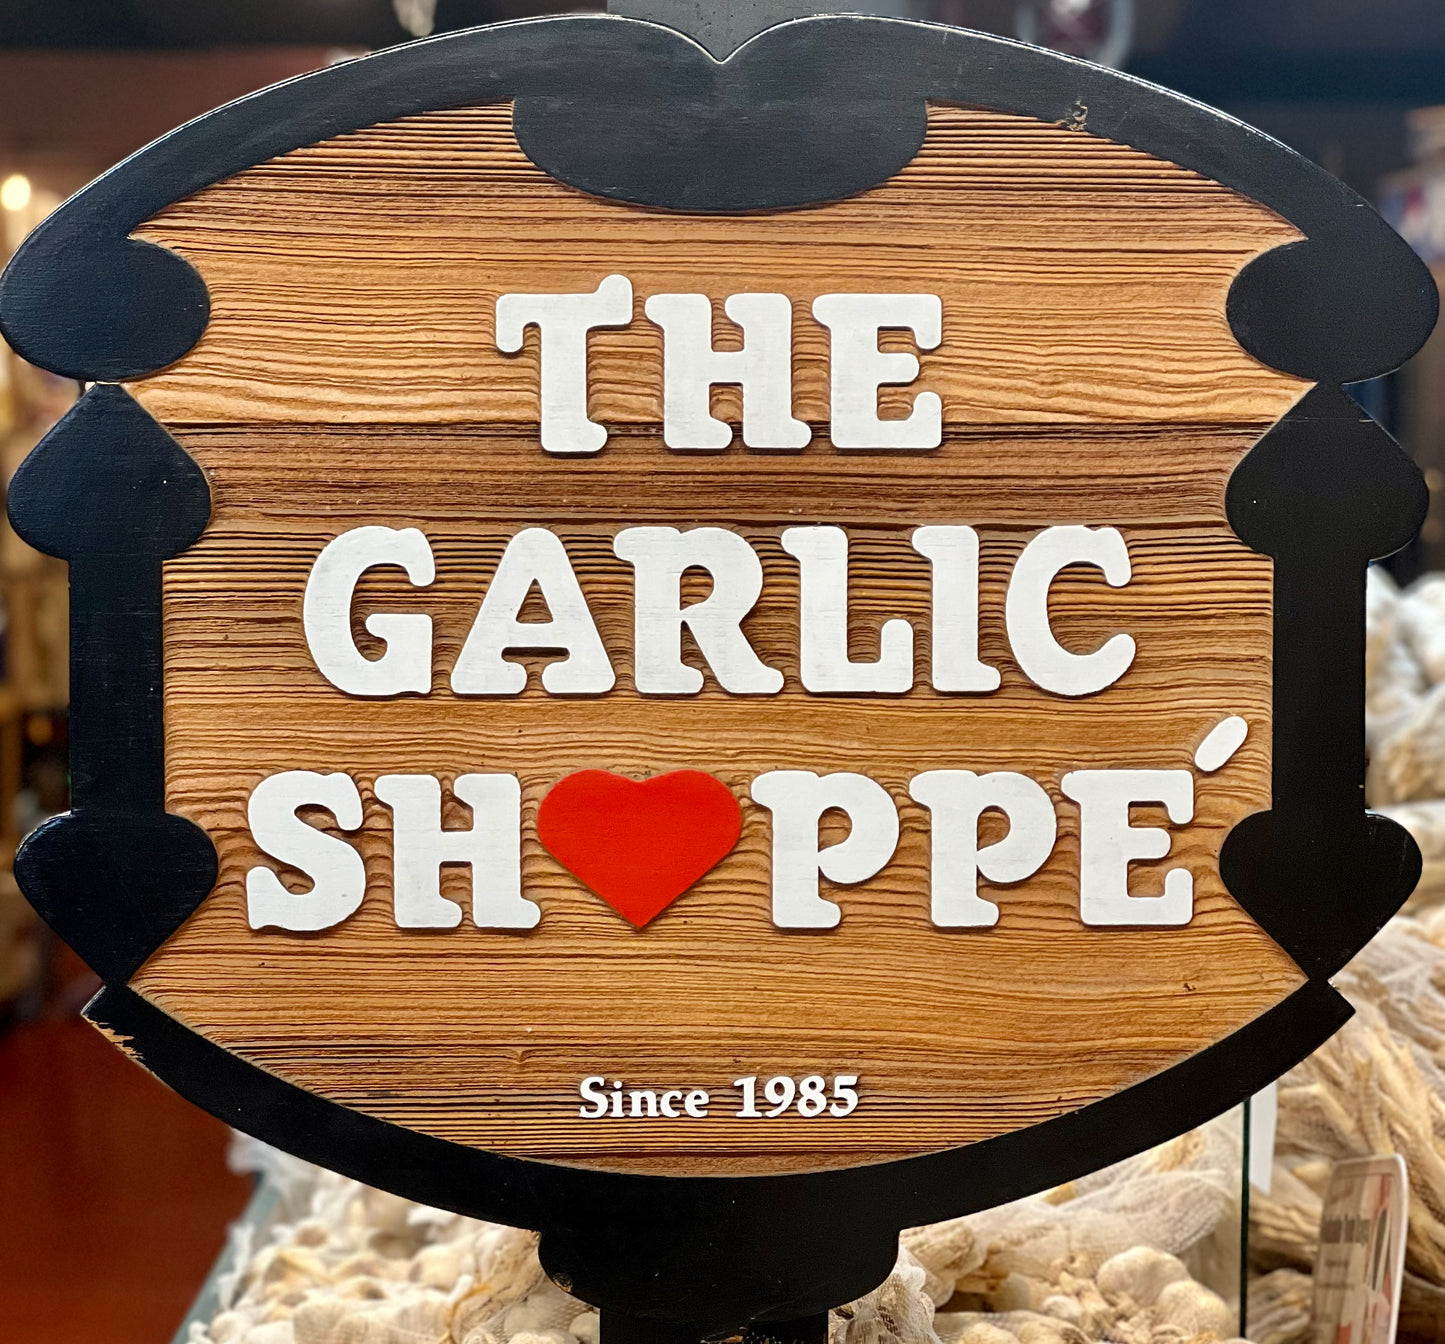 The Garlic Shoppe Gift Card from Gilroy California USA